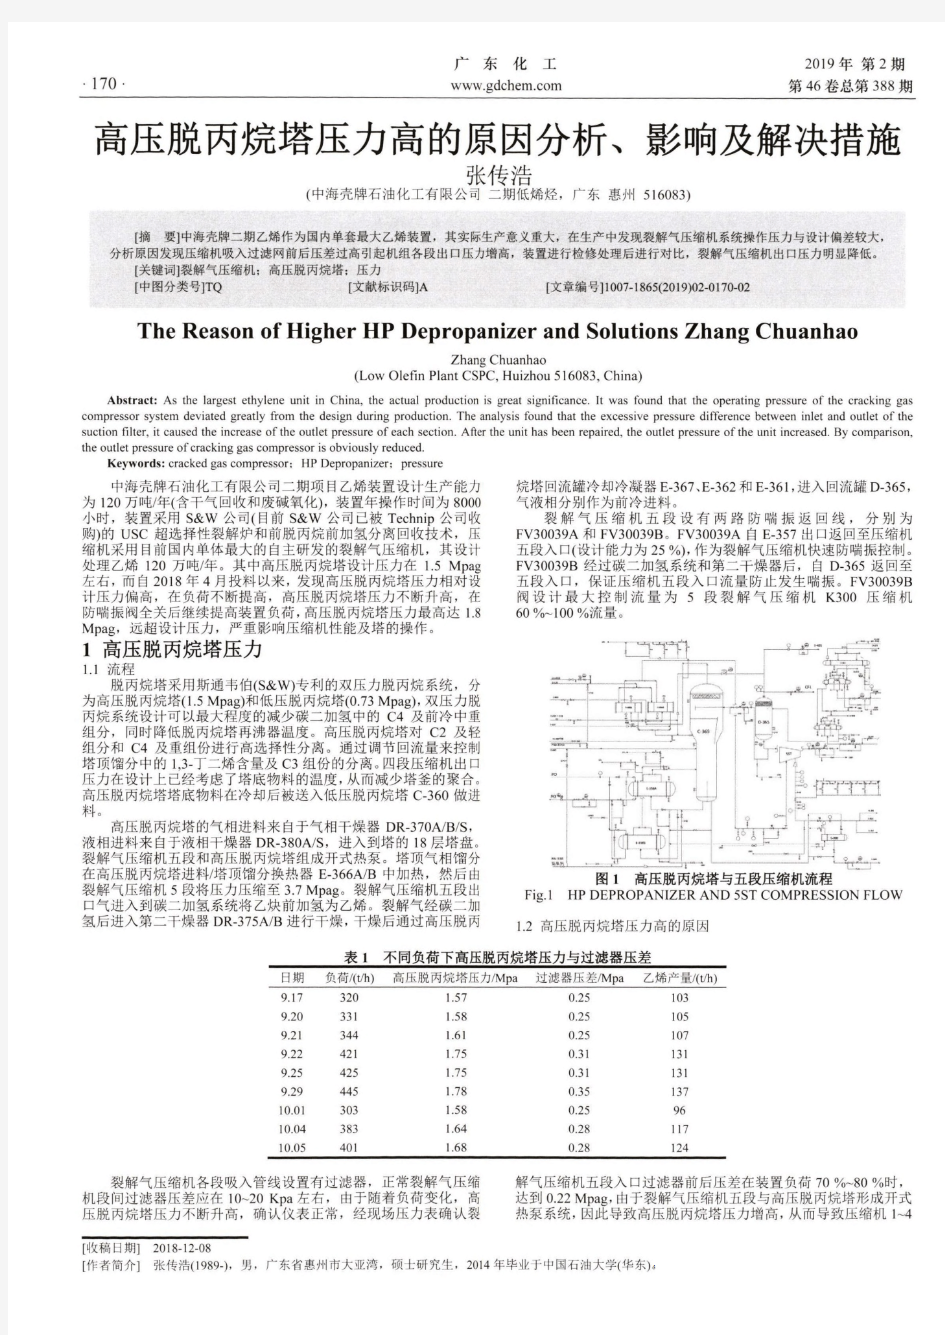 高压脱丙烷塔压力高的原因分析、影响及解决措施